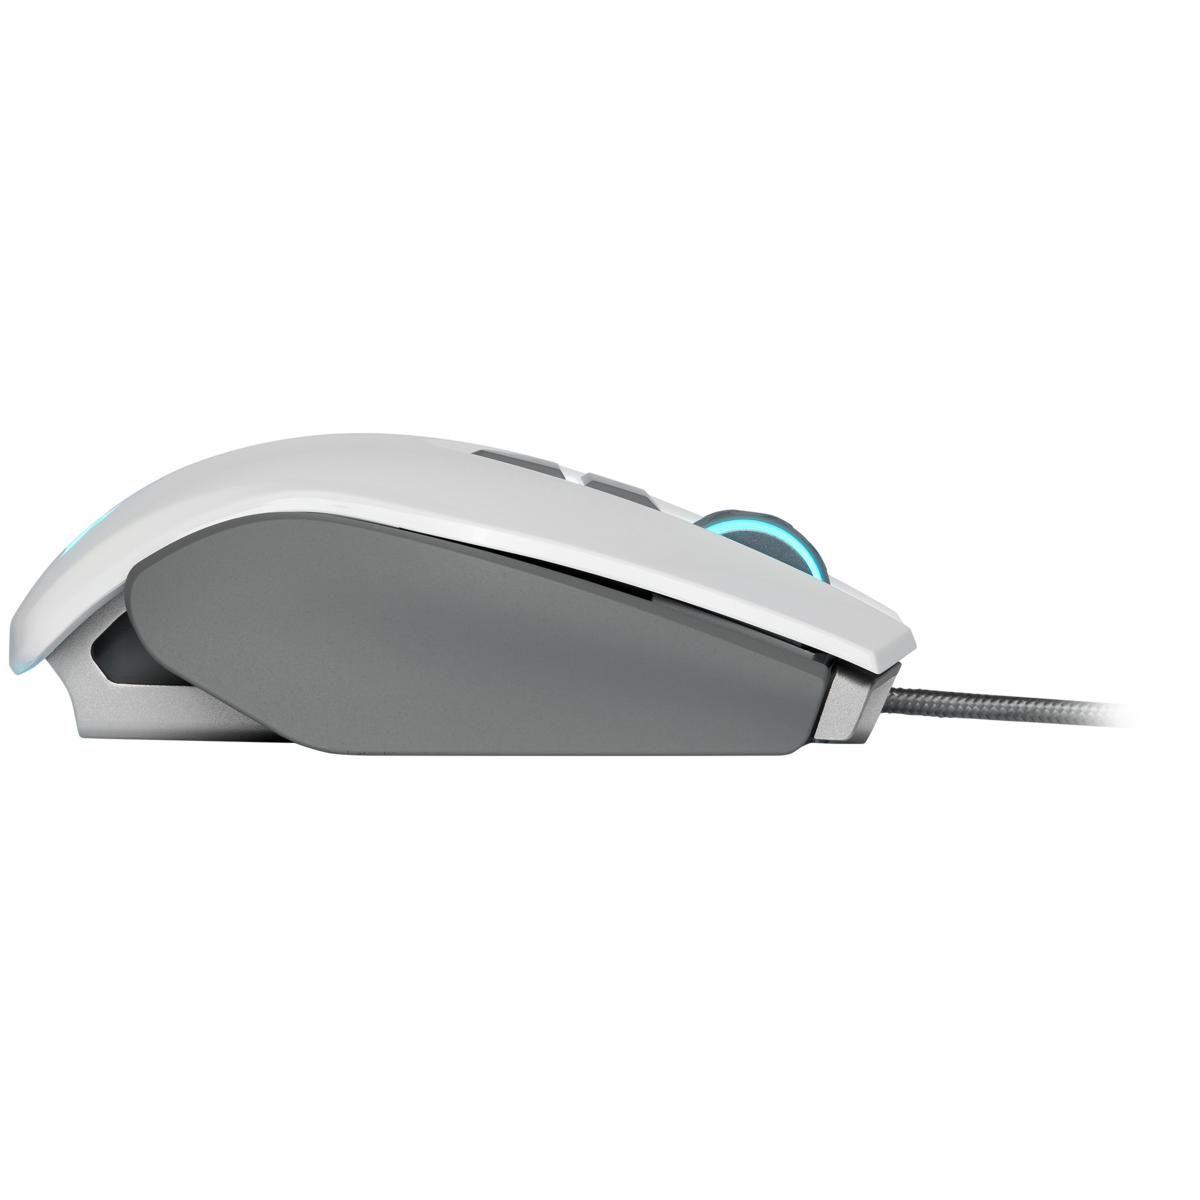 Mouse Corsair M65 Elite RGB Fps White